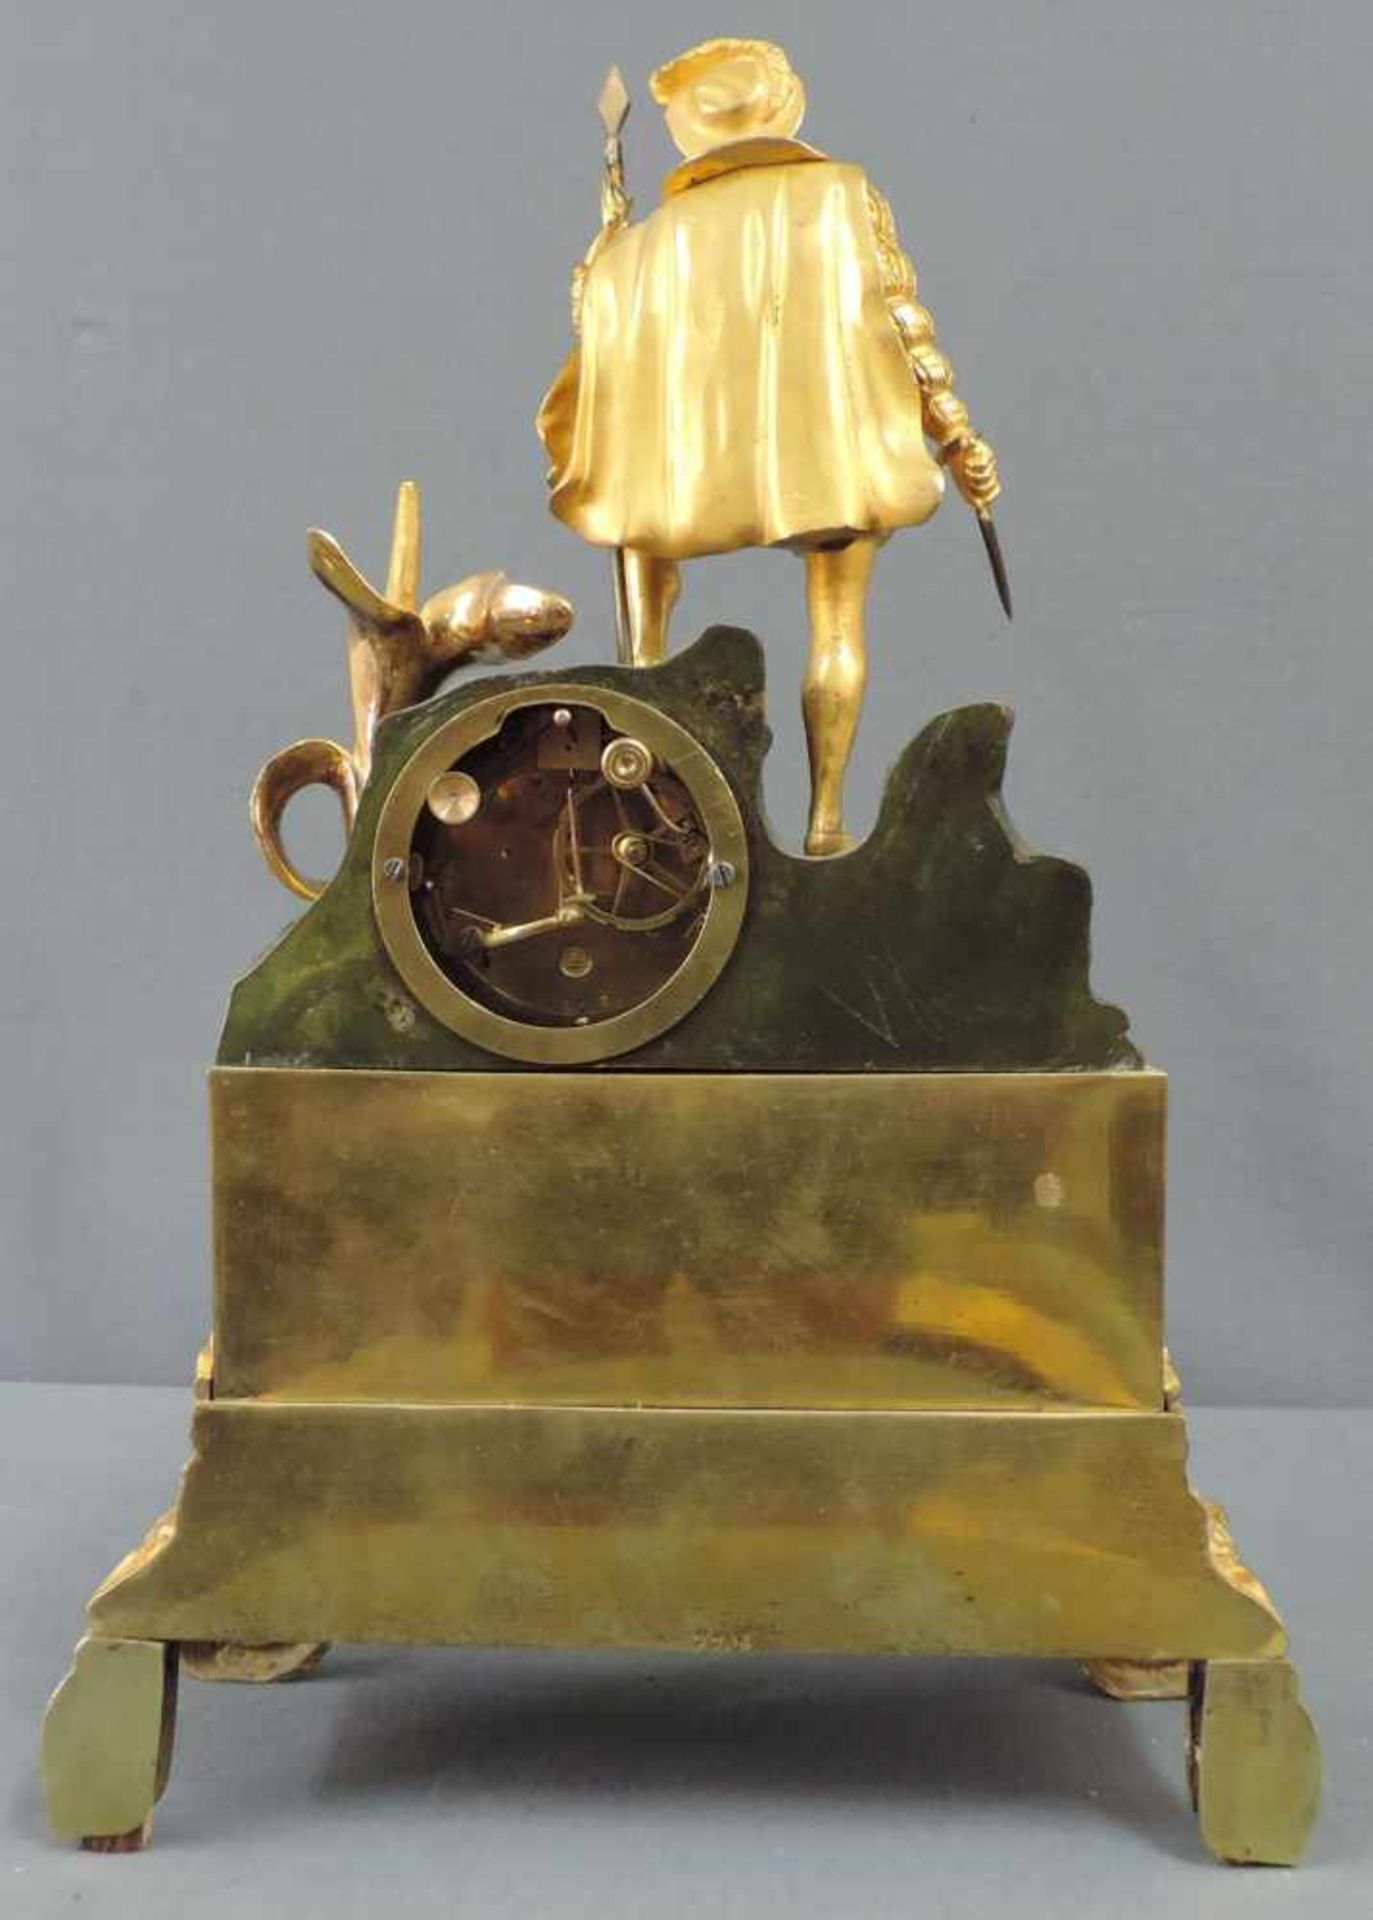 Prunkvolle Kaminuhr, 19. Jahrhundert 44 cm x 31 cm. Metallfigur mit integrierter Uhr zum aufziehen - Bild 7 aus 8